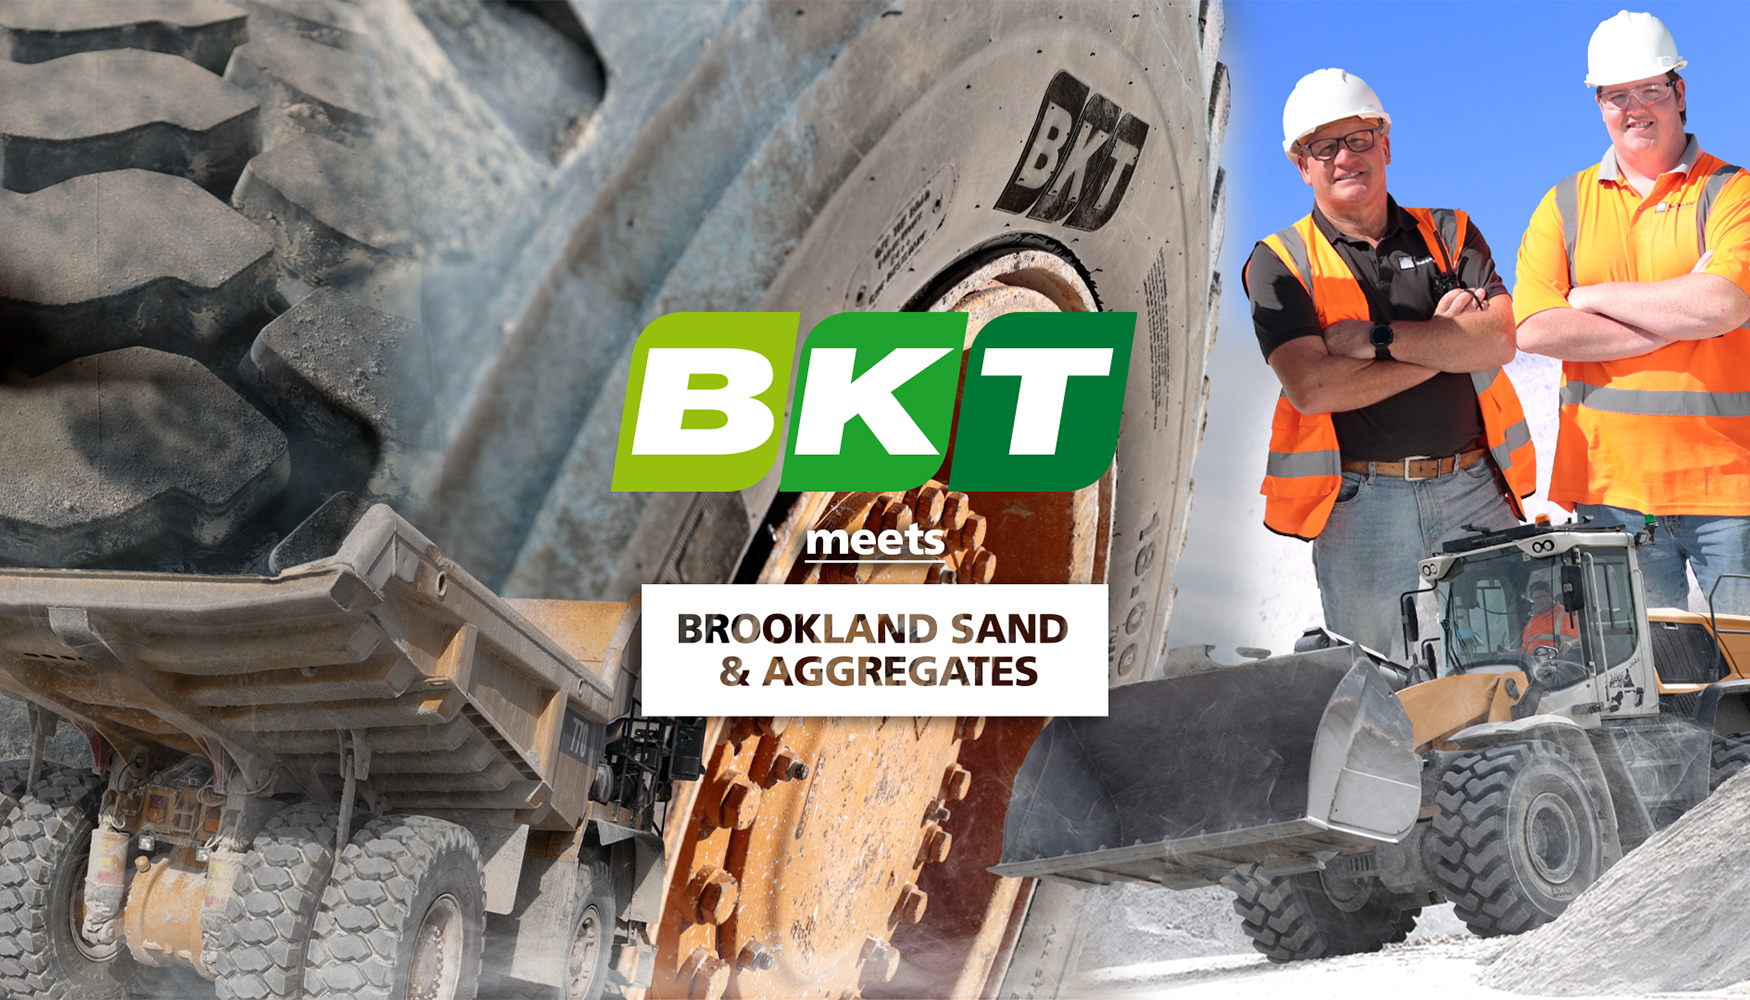 Brookland Sand & Aggregates ha vuelto a confiar en los neumticos BKT para sus palas cargadoras